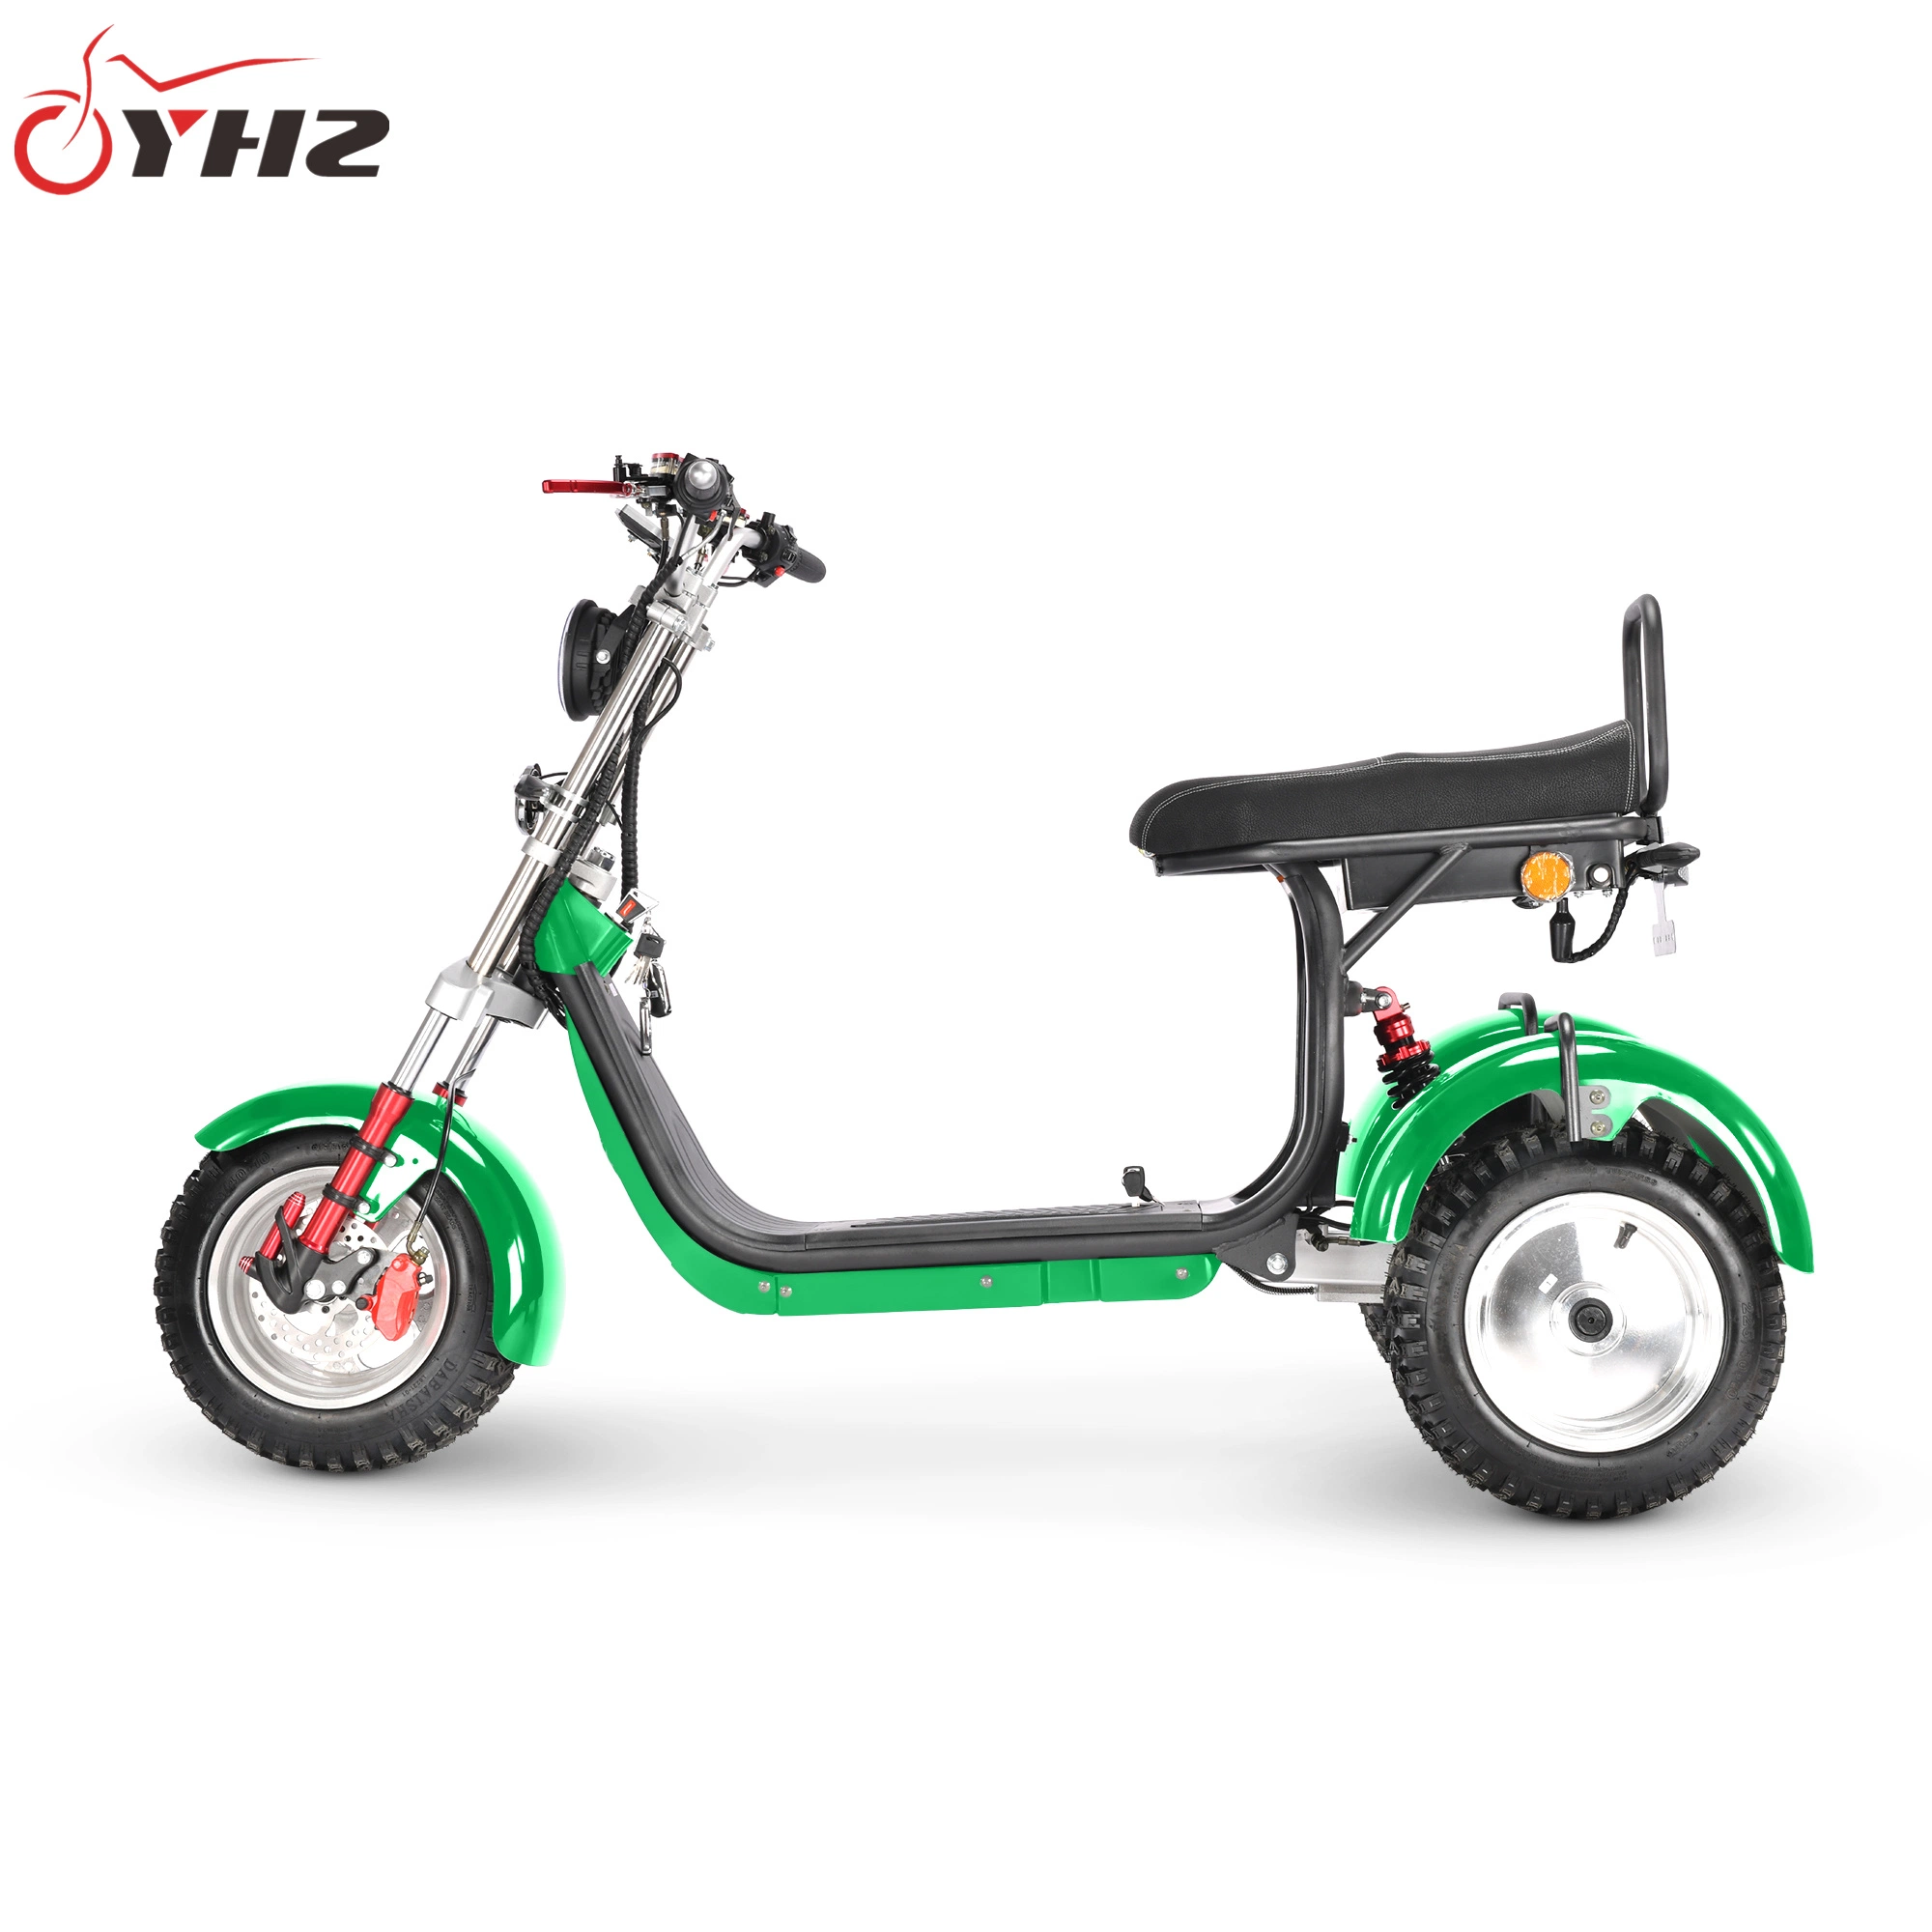 CP-7 solo el giro del scooter señala partes de la bicicleta eléctrica